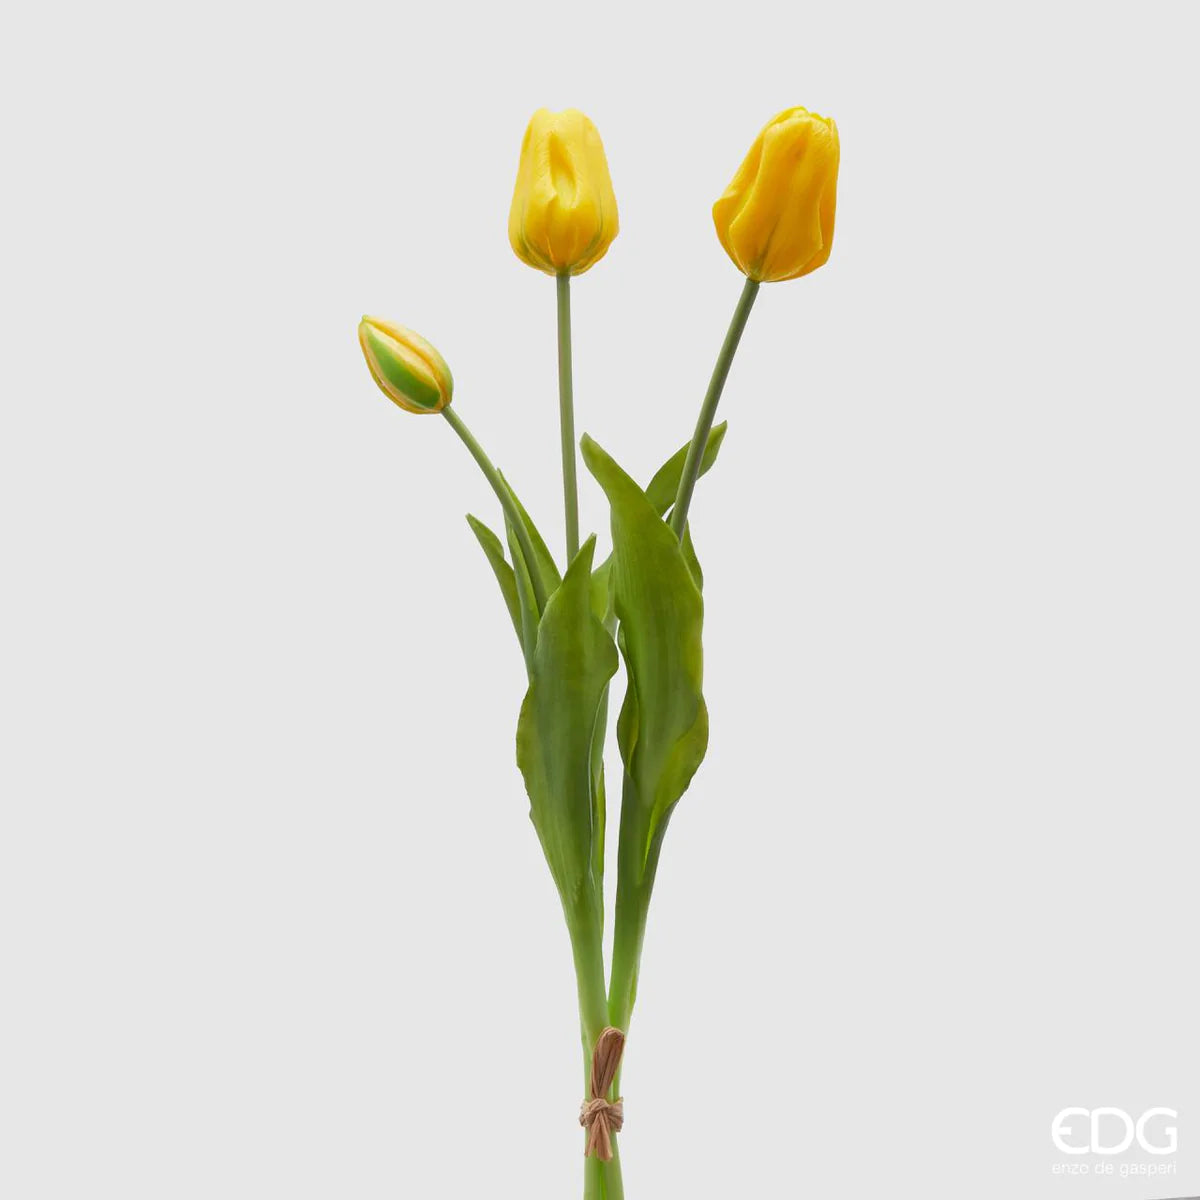 EDG - Mazzo Tulipani Olis 3 fiori chiusi (Giallo)